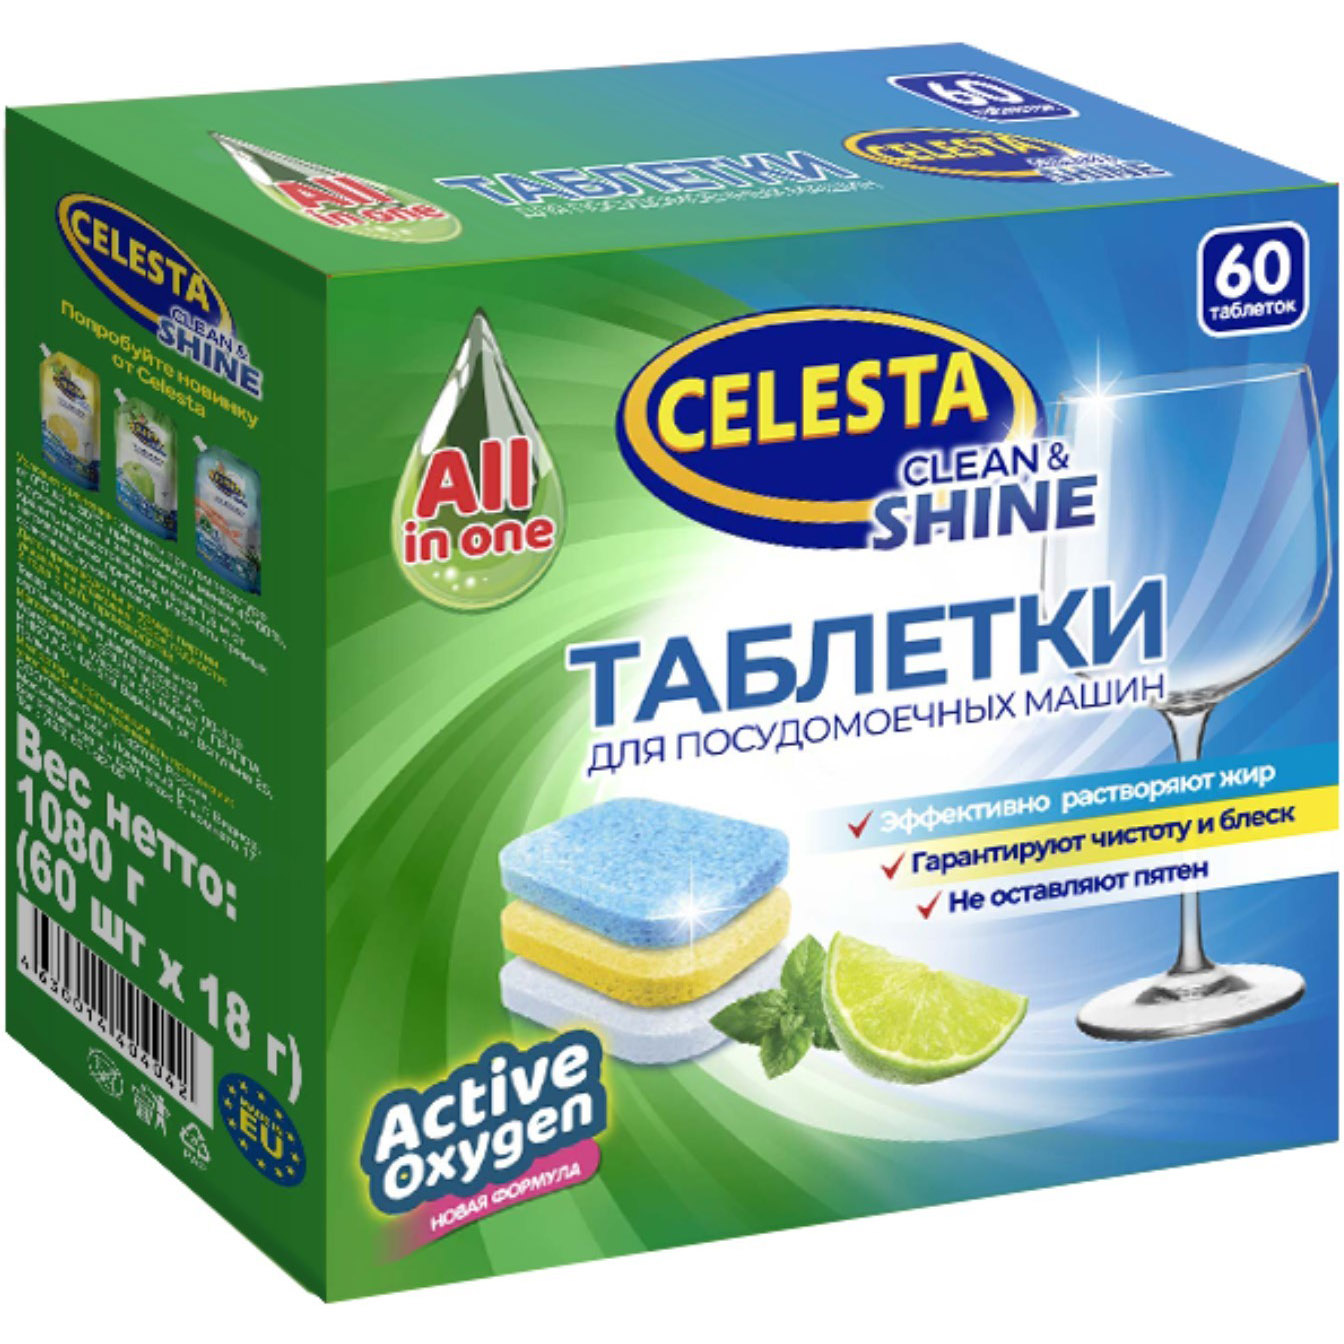 фото Таблетки для посудомоечных машин celesta clean & shine трехслойные 60 шт